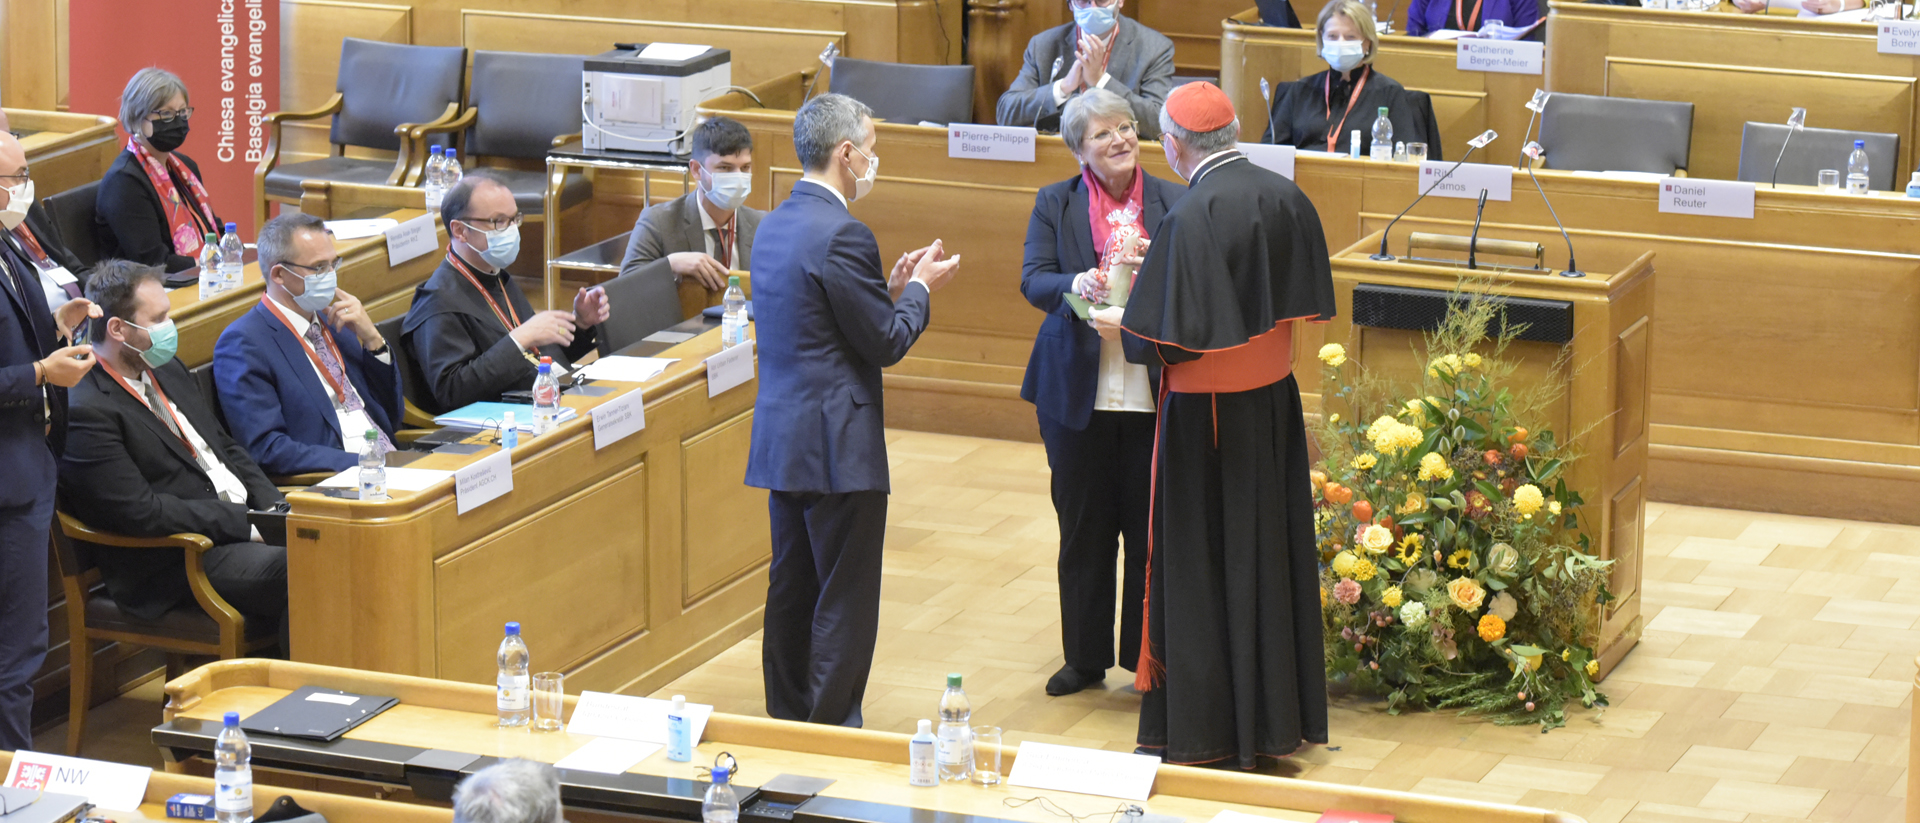 EKS-Präsidentin Rita Famos überreicht Kardinal Parolin eine Kerze und einen Heks-Spendengutschein als Geschenk, Bundesrat Cassis applaudiert.